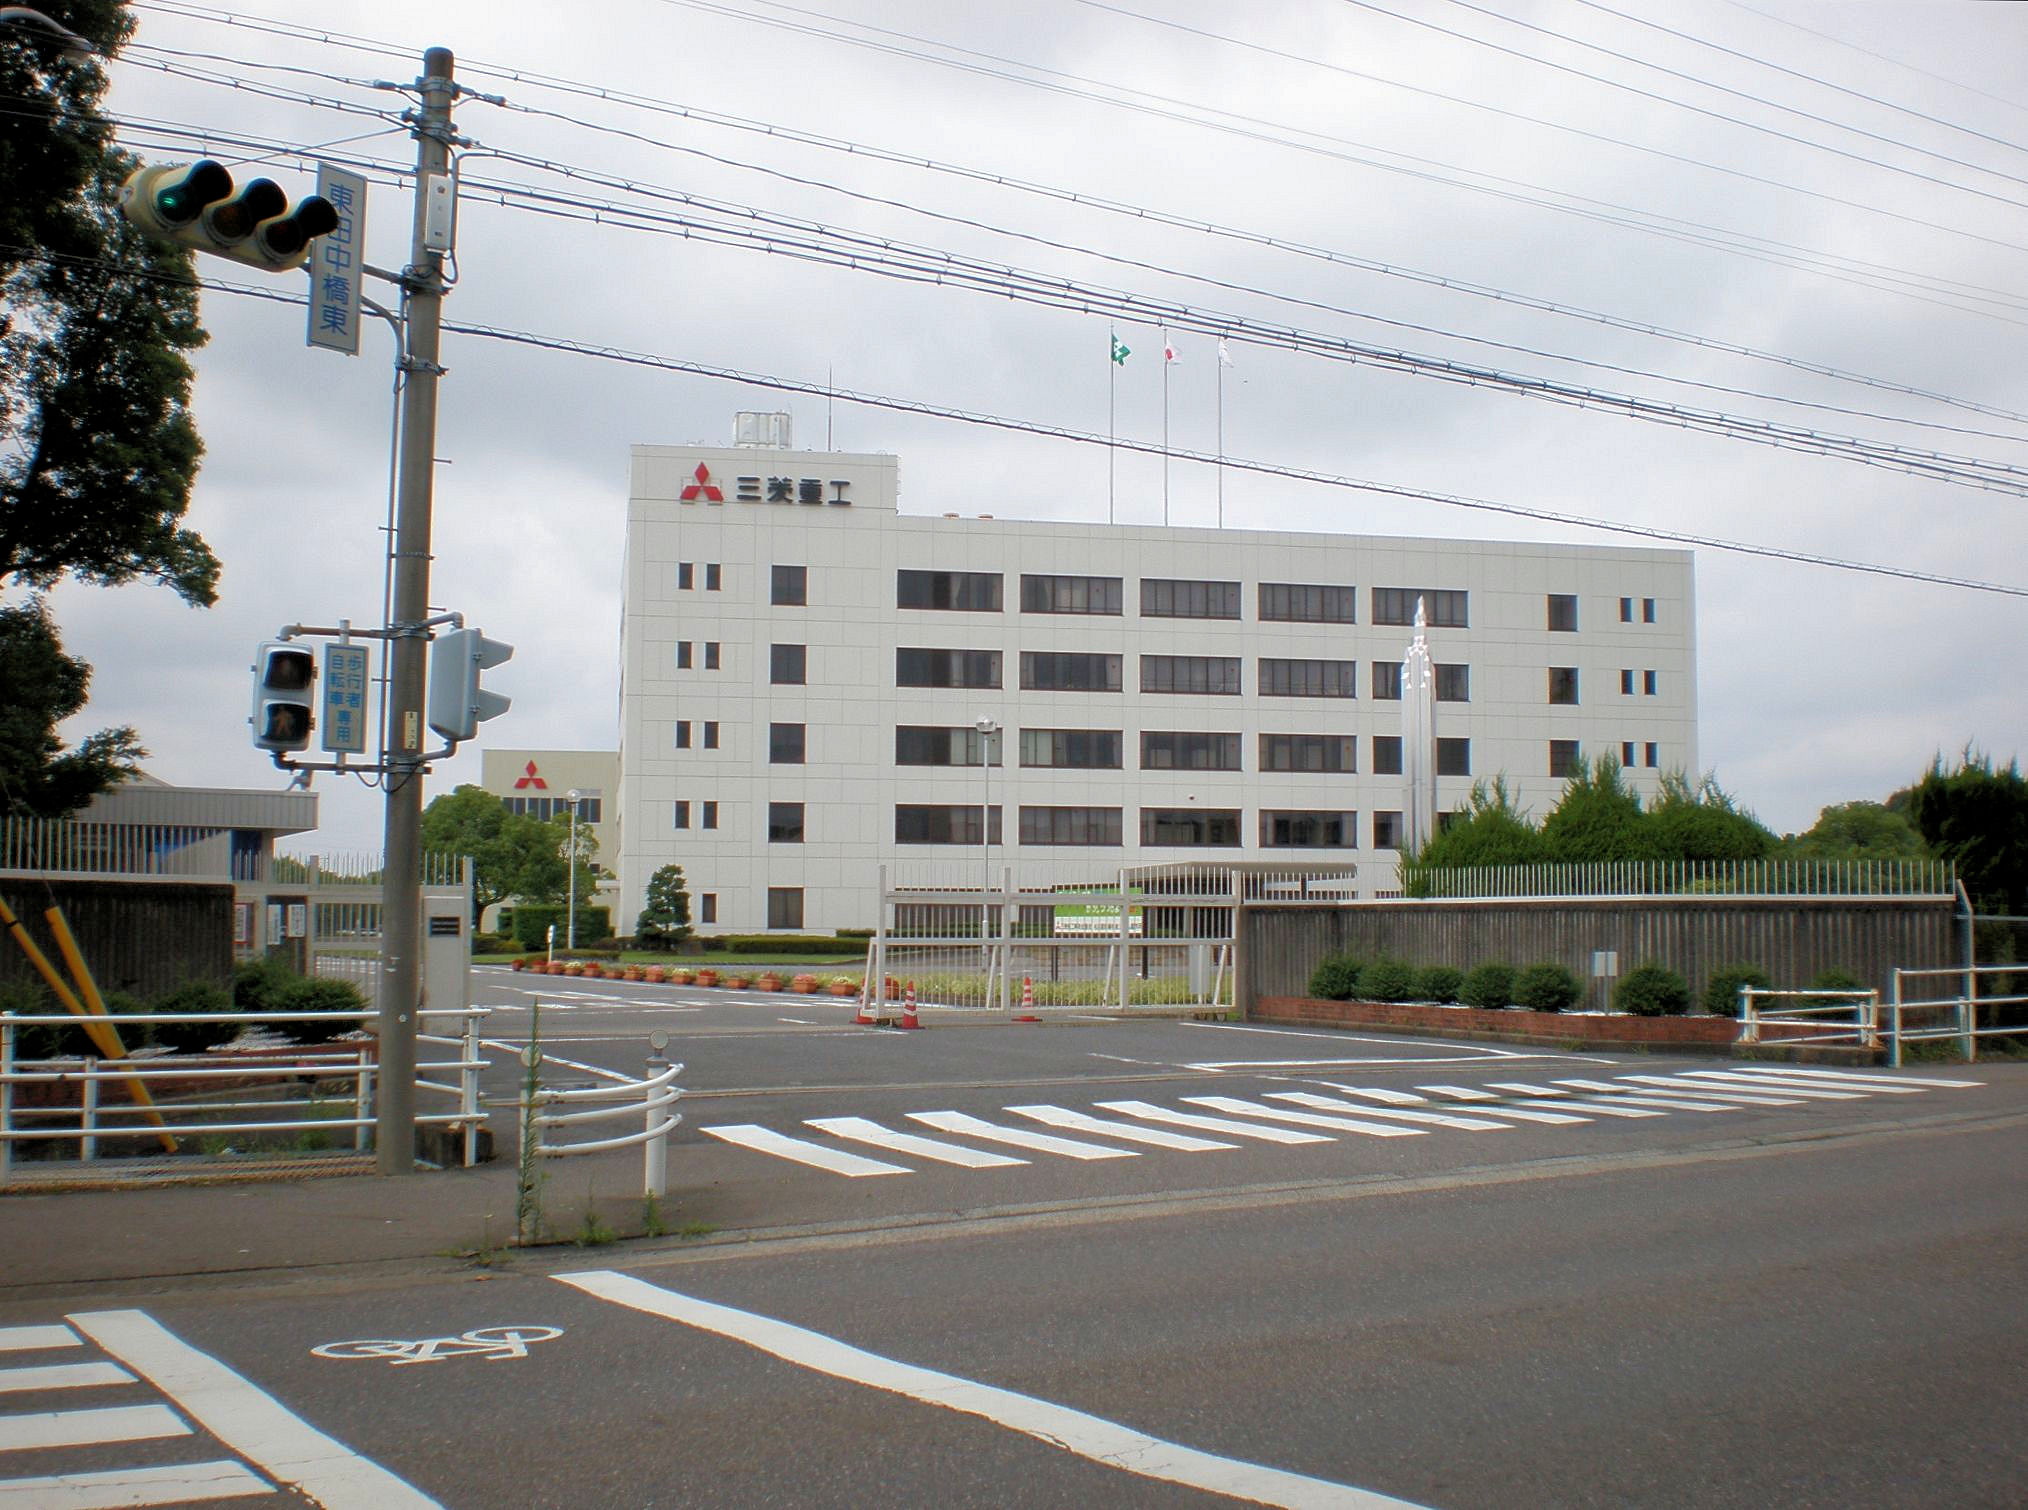 三菱重工業名古屋誘導推進システム製作所 - Wikipedia